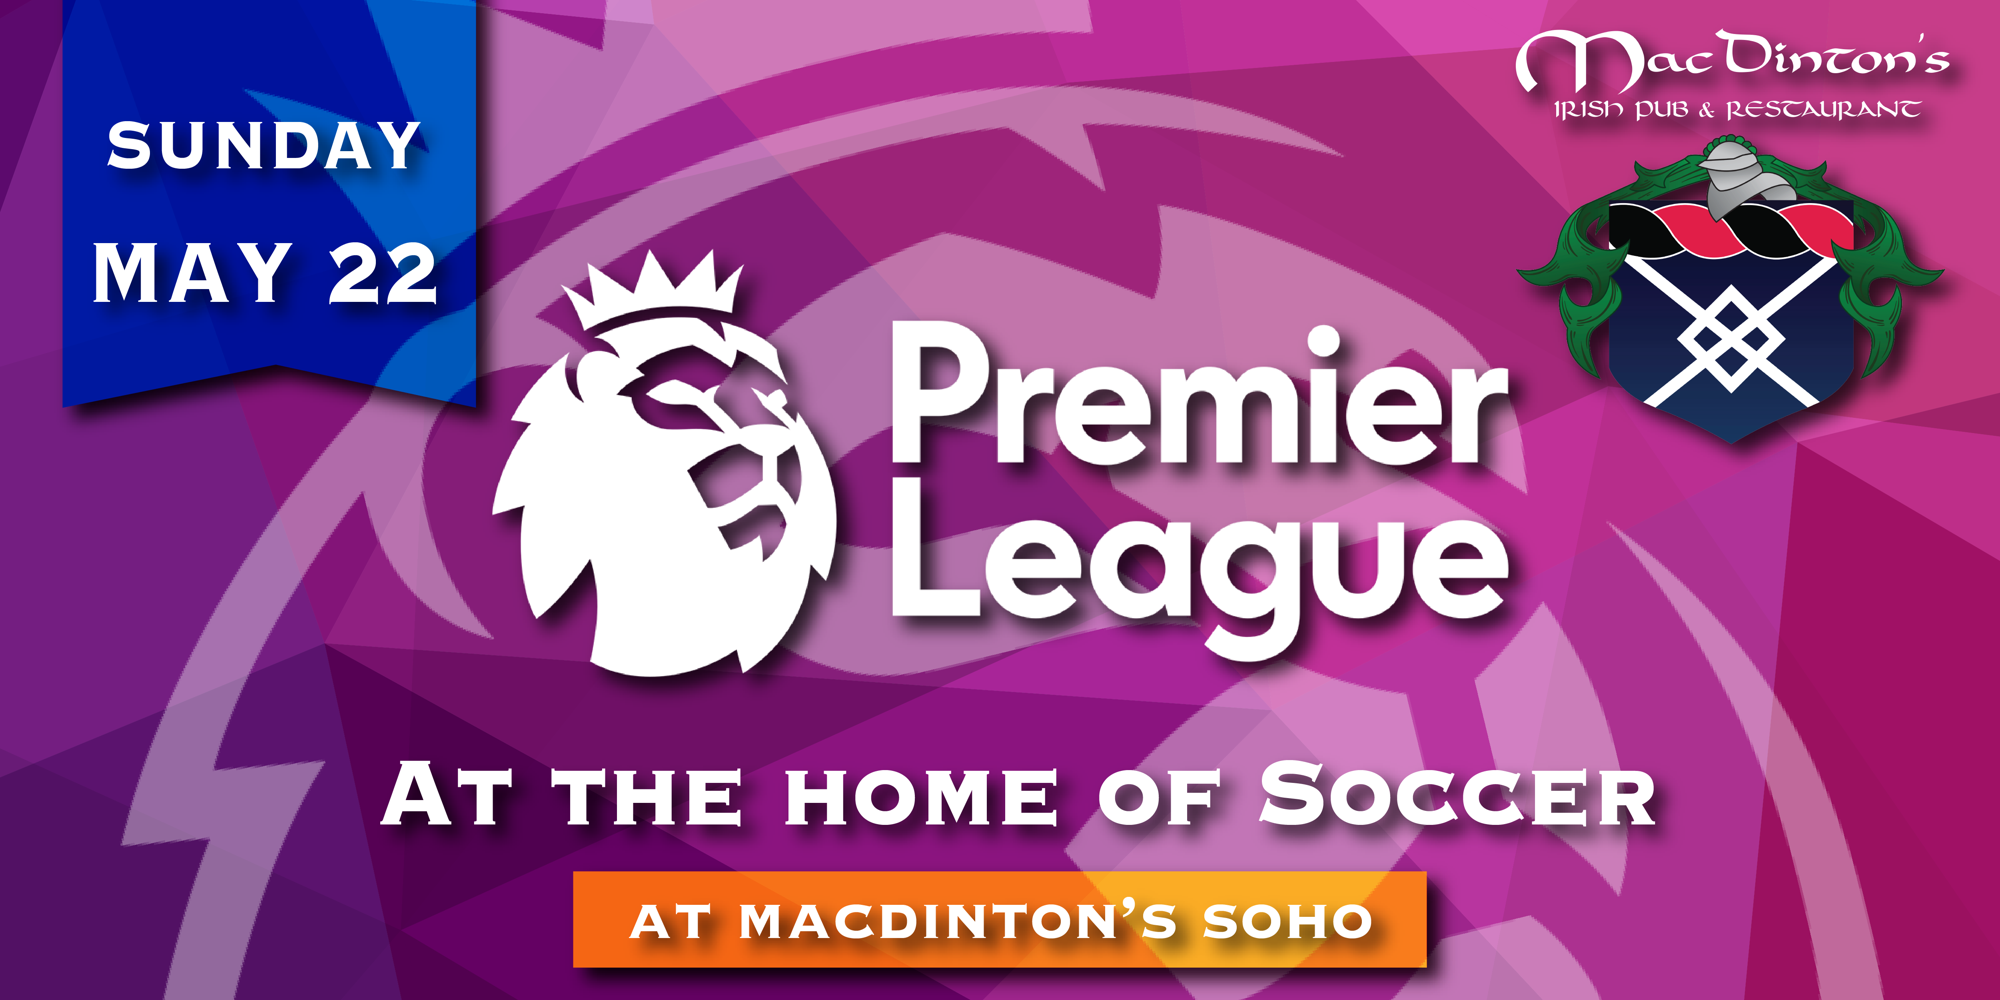 Premier League Watch Party! promotional image